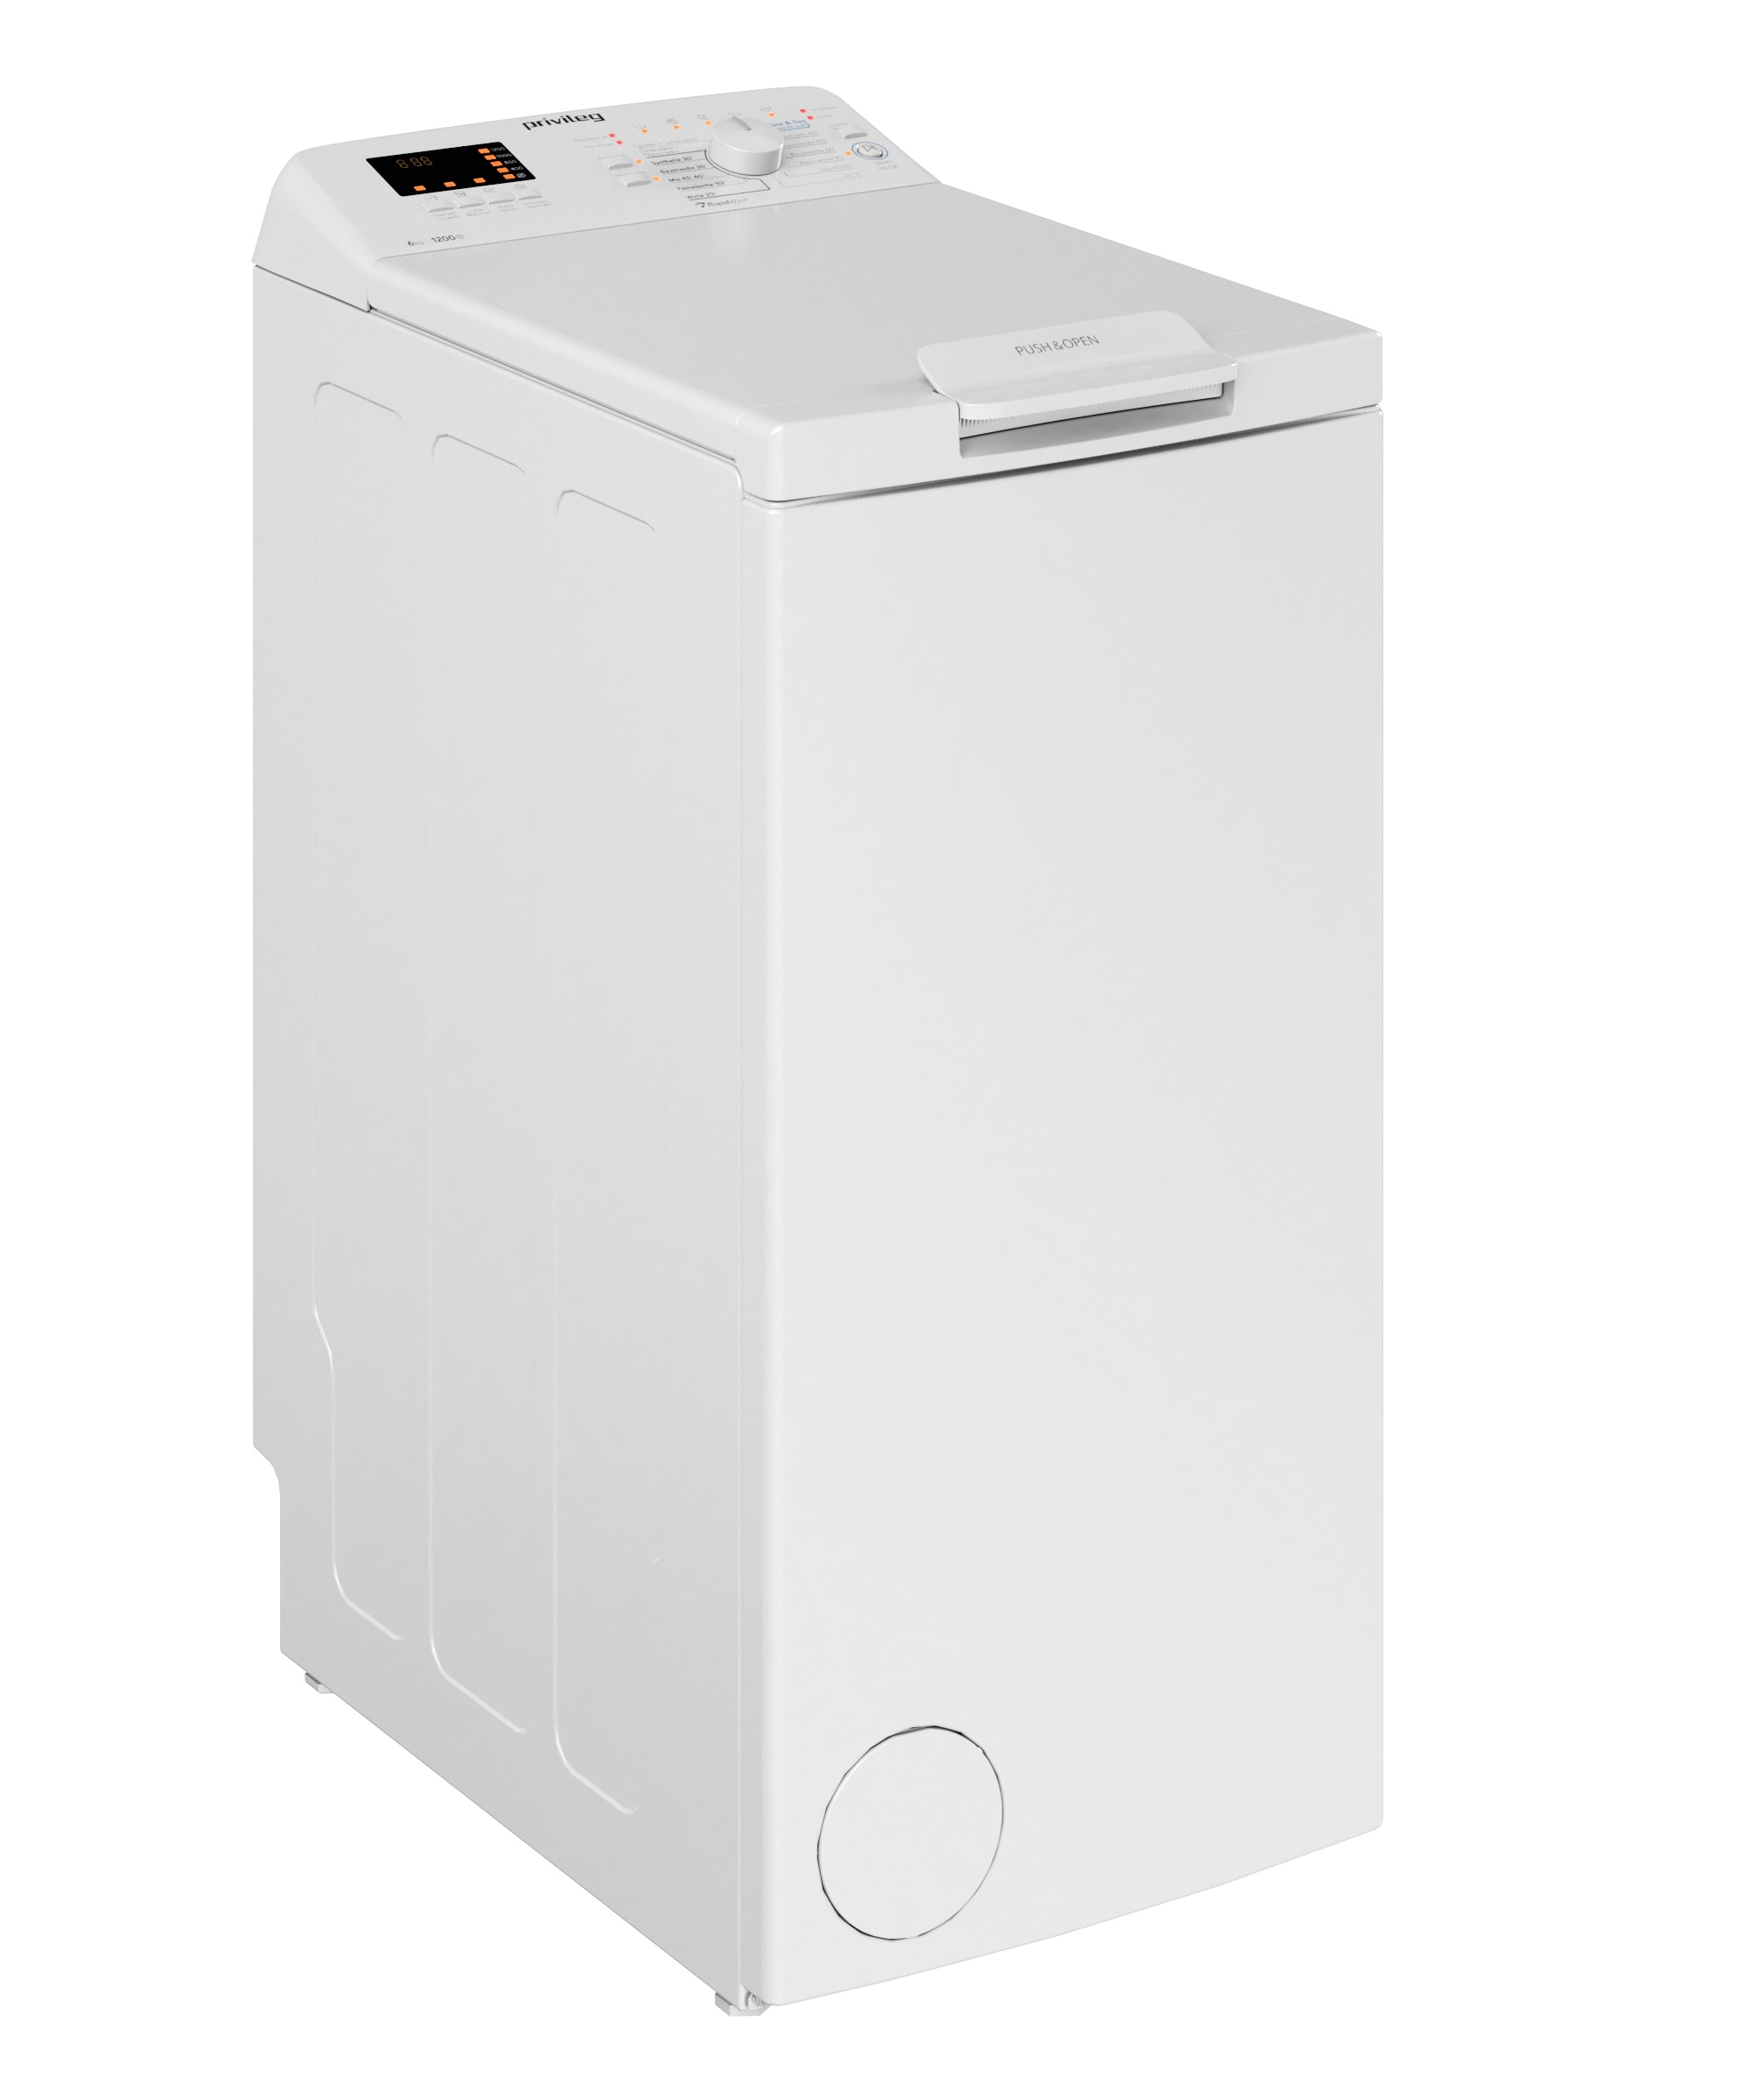 Privileg Waschmaschine Toplader "PWT C623 N", PWT C623 N, 6 kg, 1200 U/min, 50 Monate Herstellergarantie